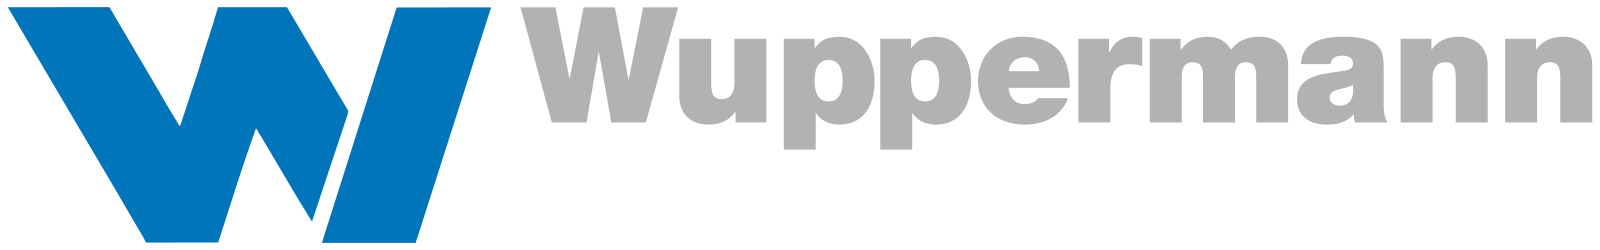 Wuppermann_AG_logo.svg